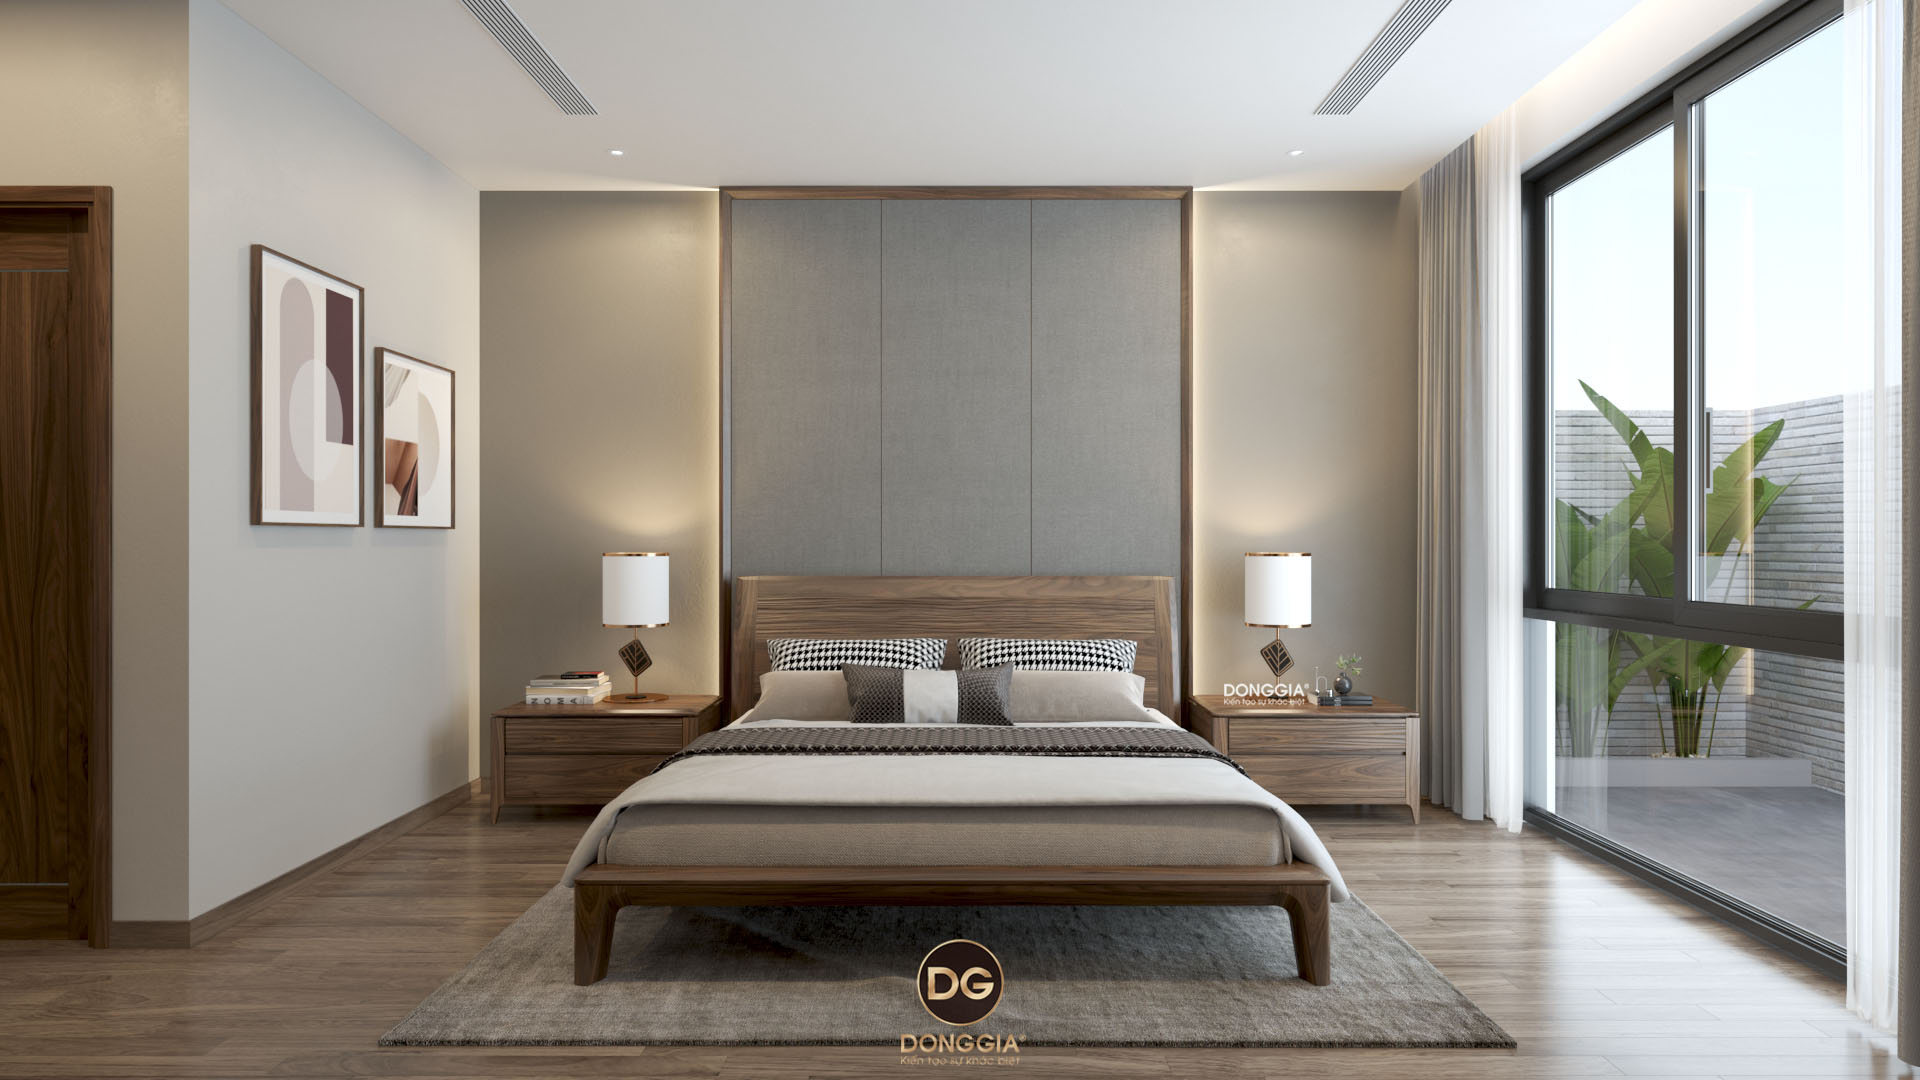 49 decor phòng ngủ màu xám các sắc thái đẹp tốt cho giấc ngủ